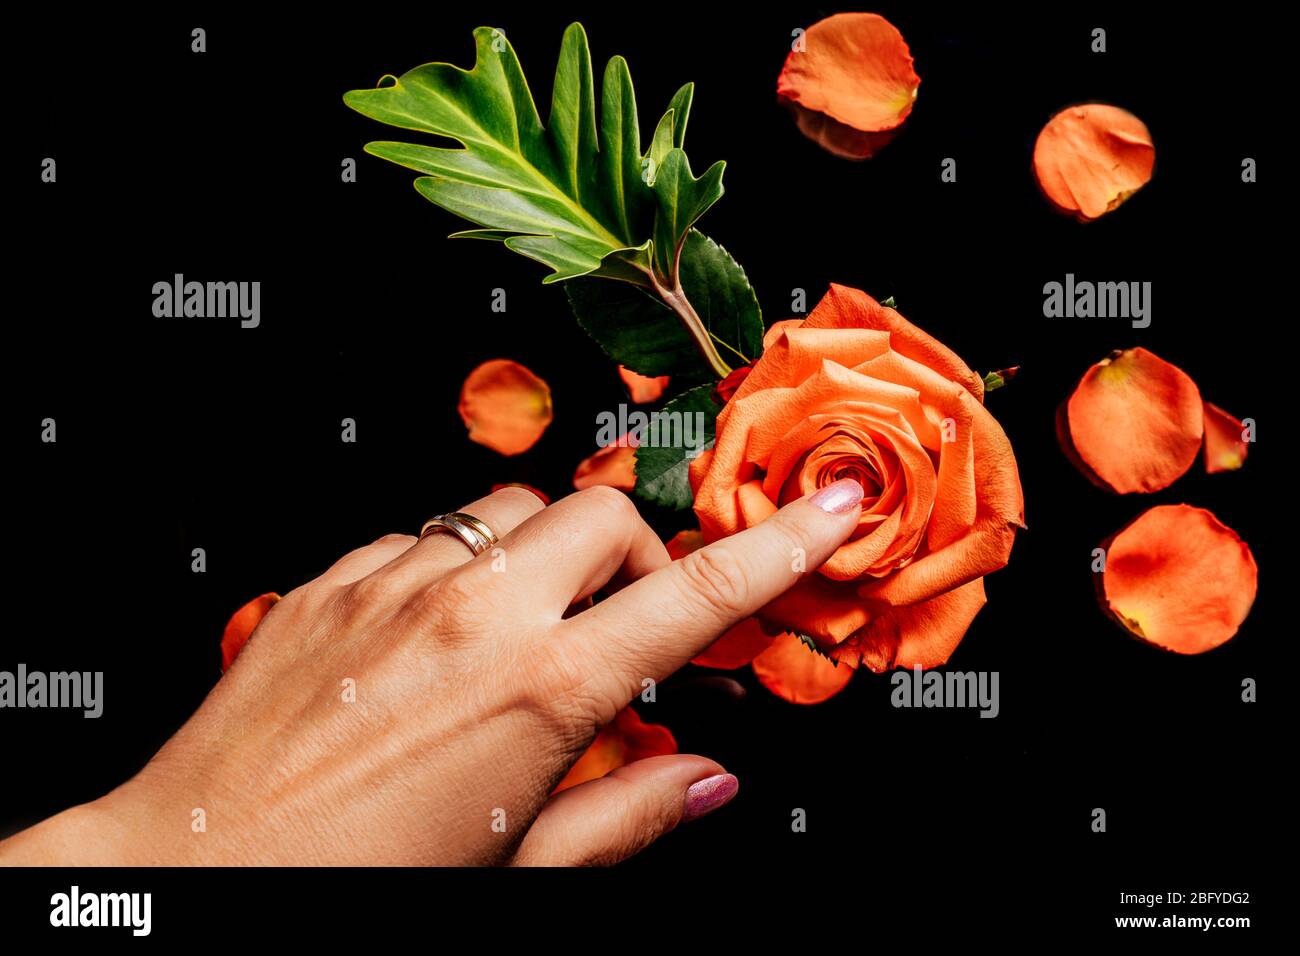 Damenhandgriffe mit Finger orange Rose auf schwarzem Hintergrund mit verschwommenen Blütenblättern und Blättern darauf, Draufsicht. Konzept der Liebe, Fürsorge und Zärtlichkeit. Stockfoto